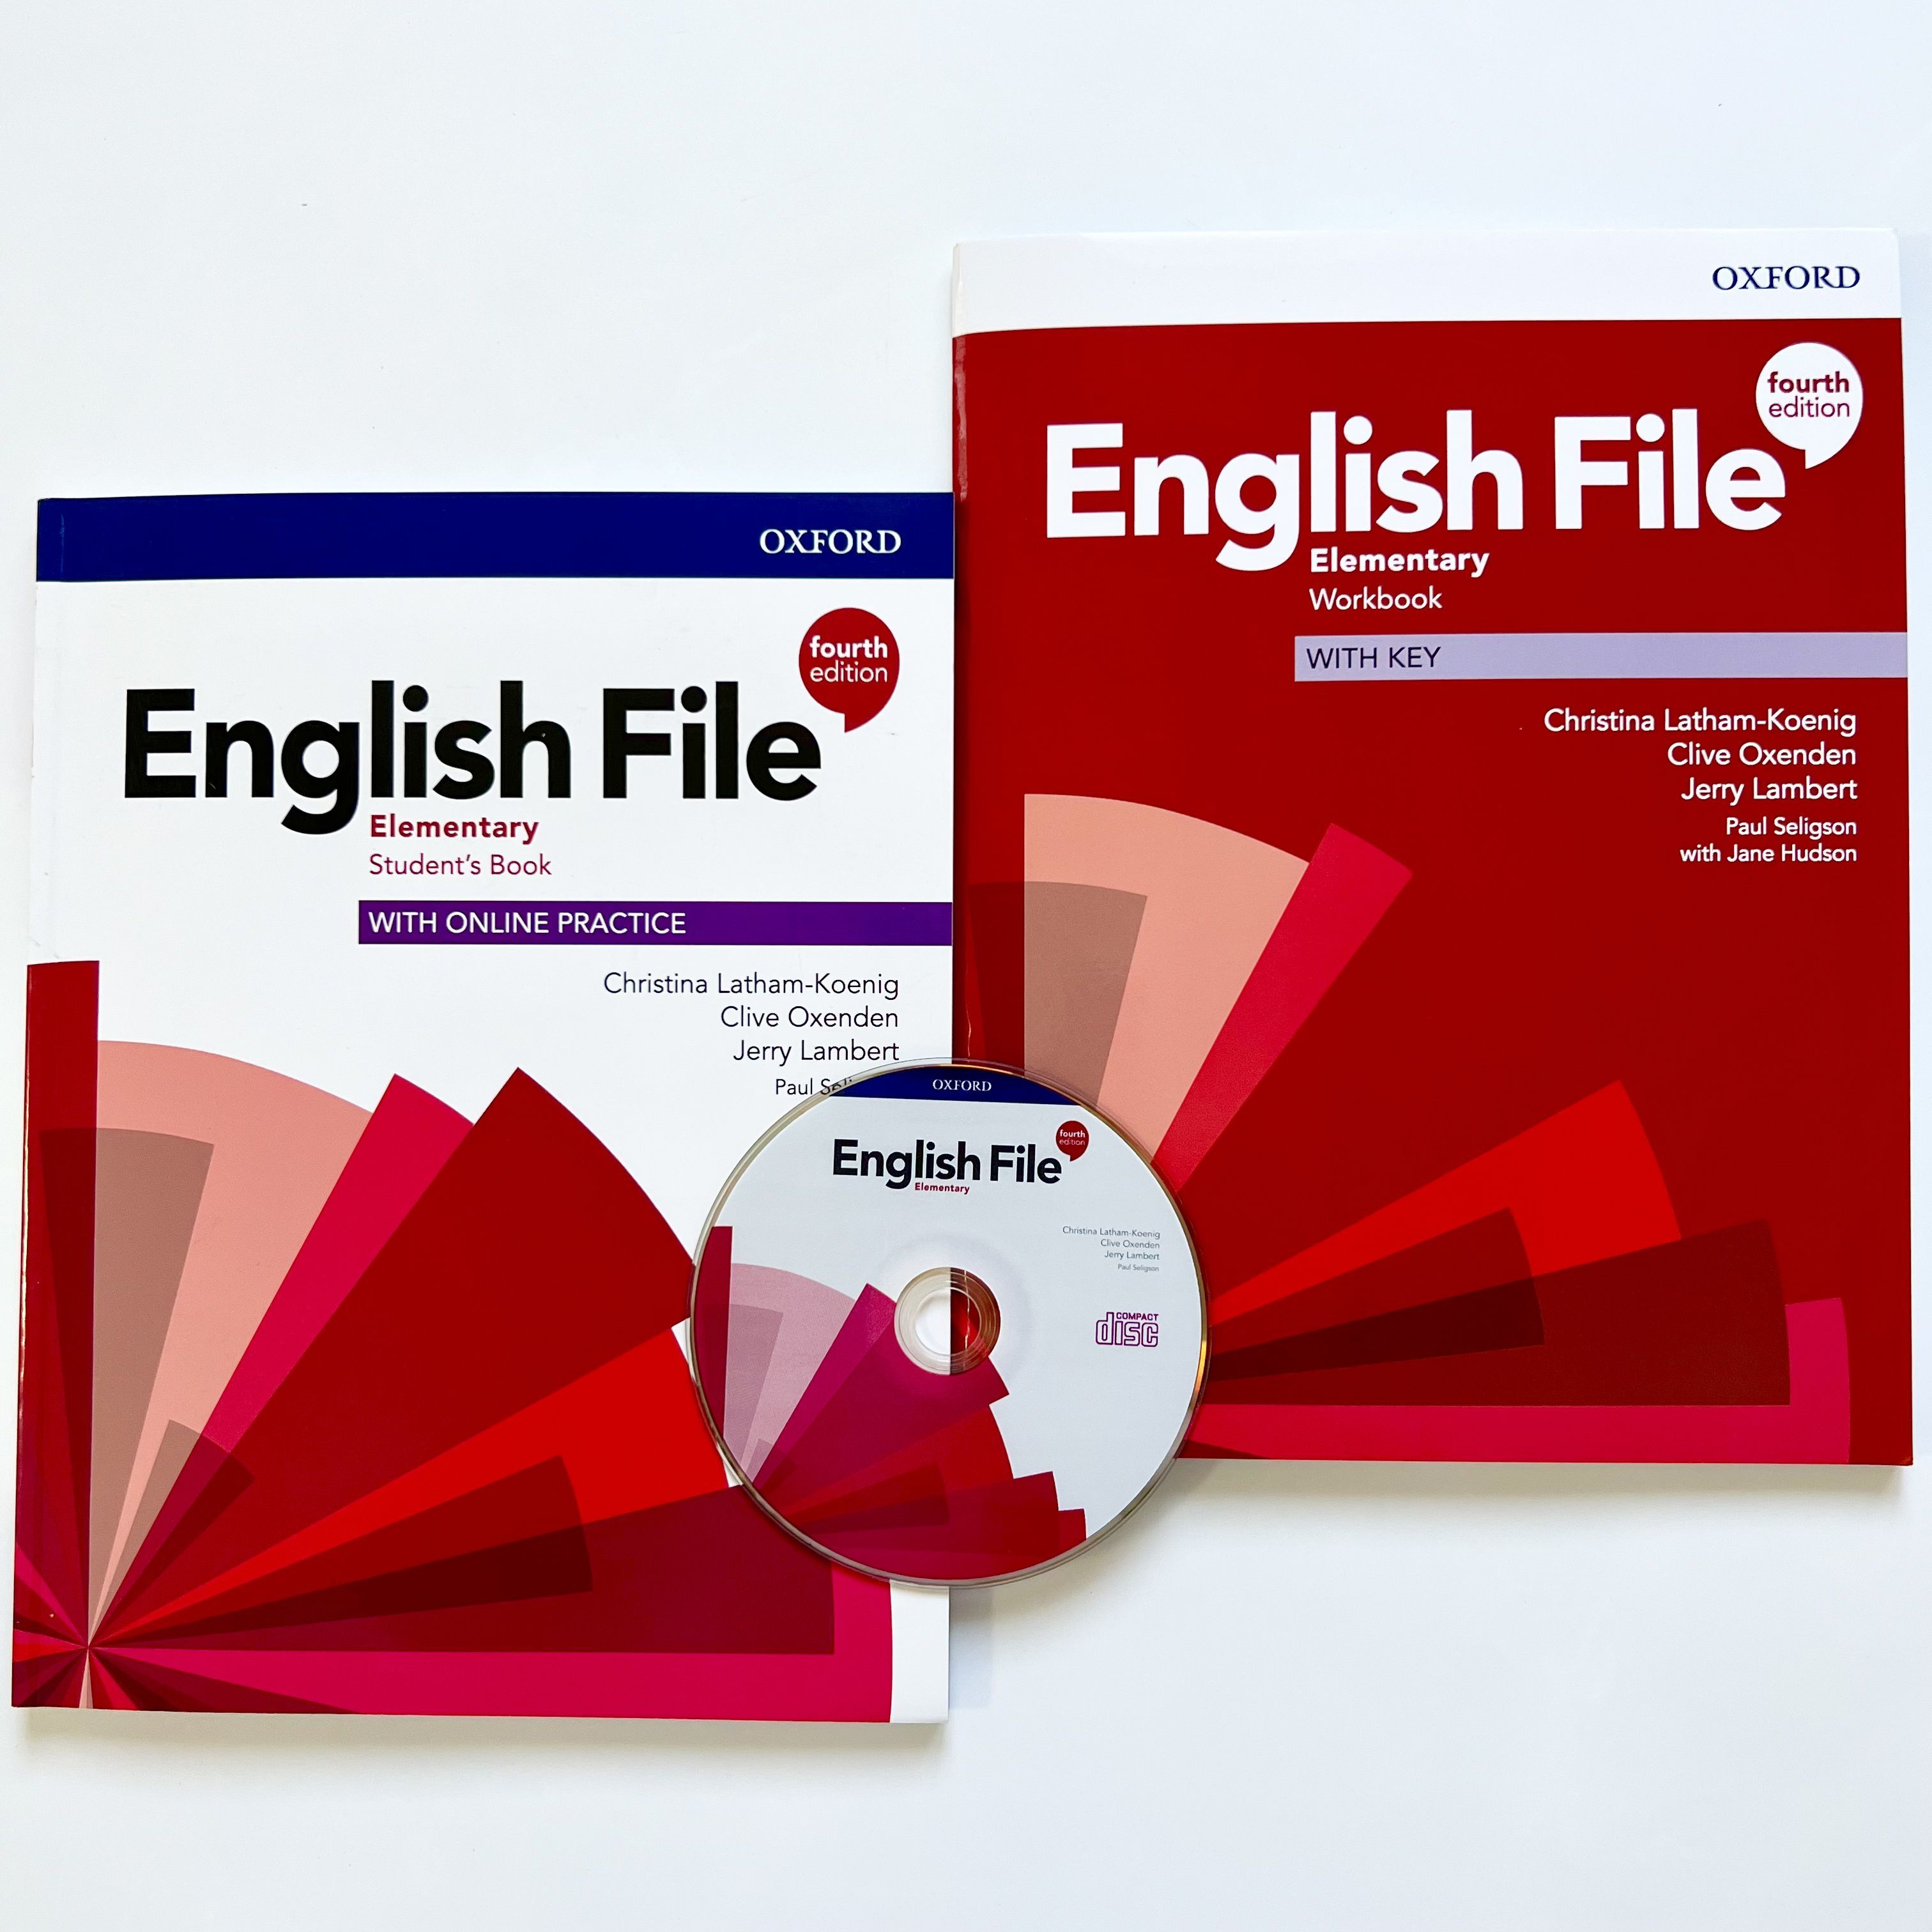 English file elementary 4. English file: Elementary. English file Elementary 4th. English file Elementary 4th Edition. English file 4 Edition Elementary.